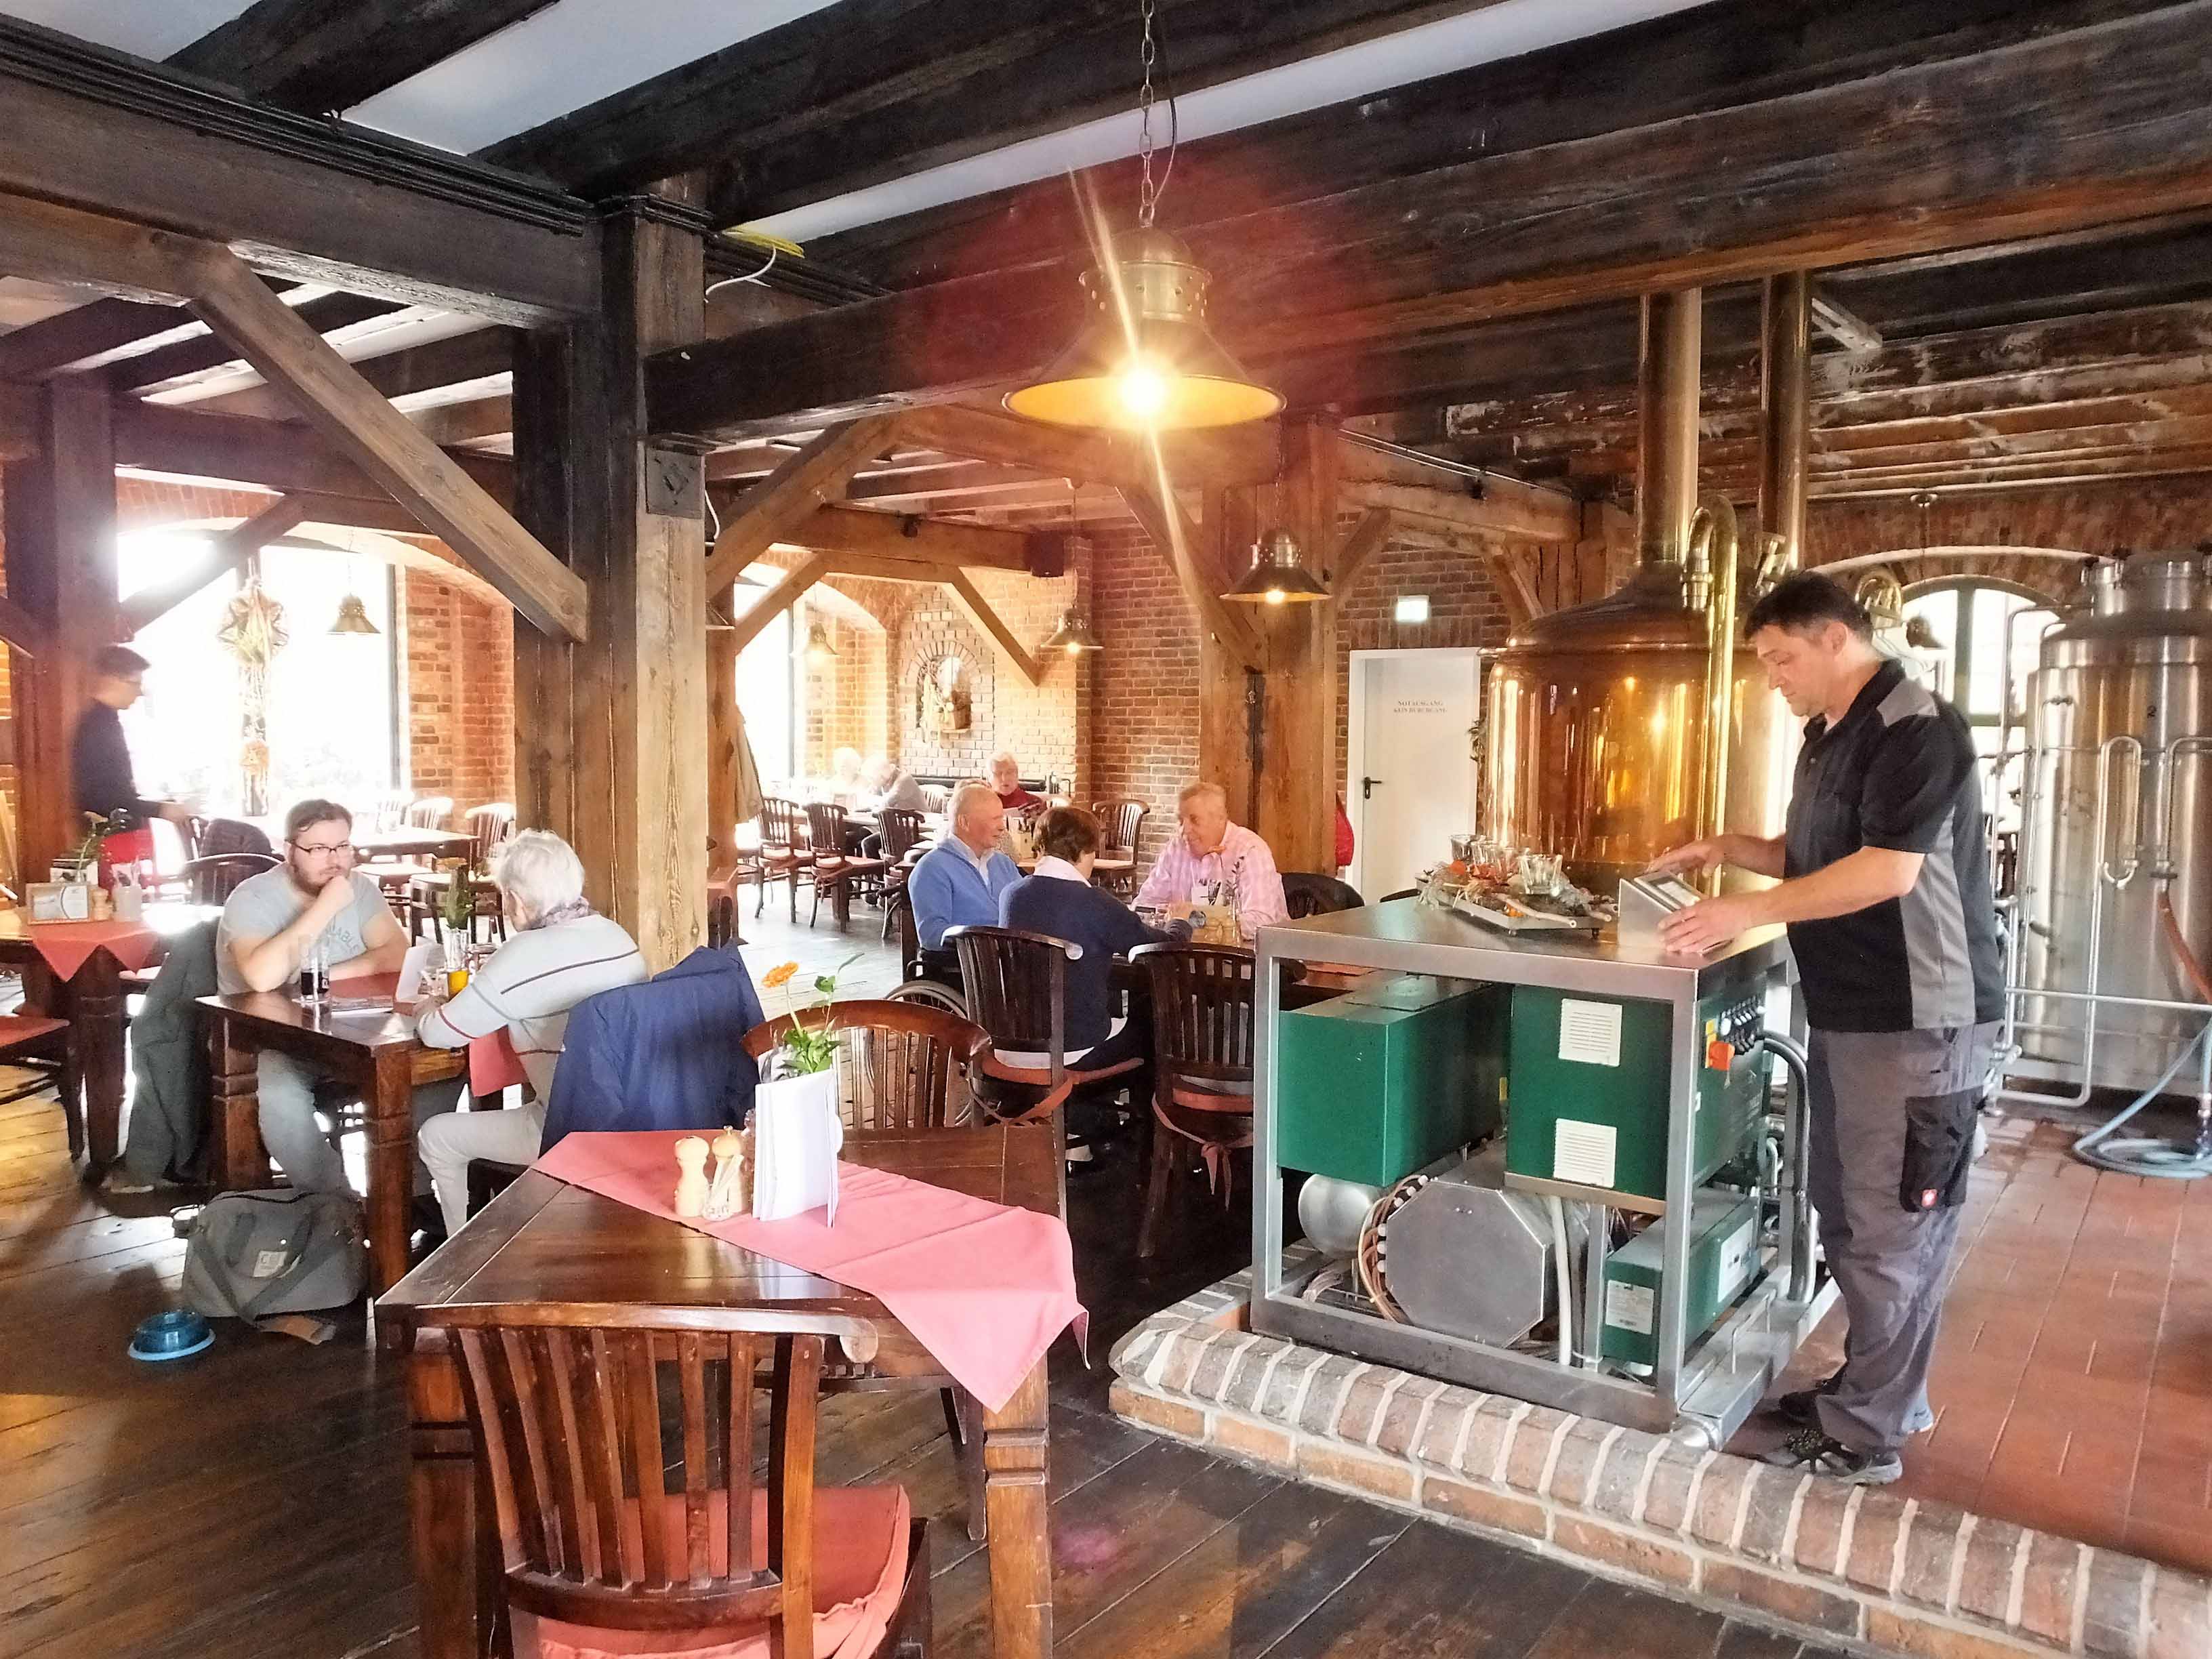 Die urgemütliche Brauhaus-Gaststätte Alte Ölmühle wartet neben den eigenen drei Biersorten der Marke "HerzBräu" mit einem vielseitigen Getränke- und Speiseangebot auf. 

